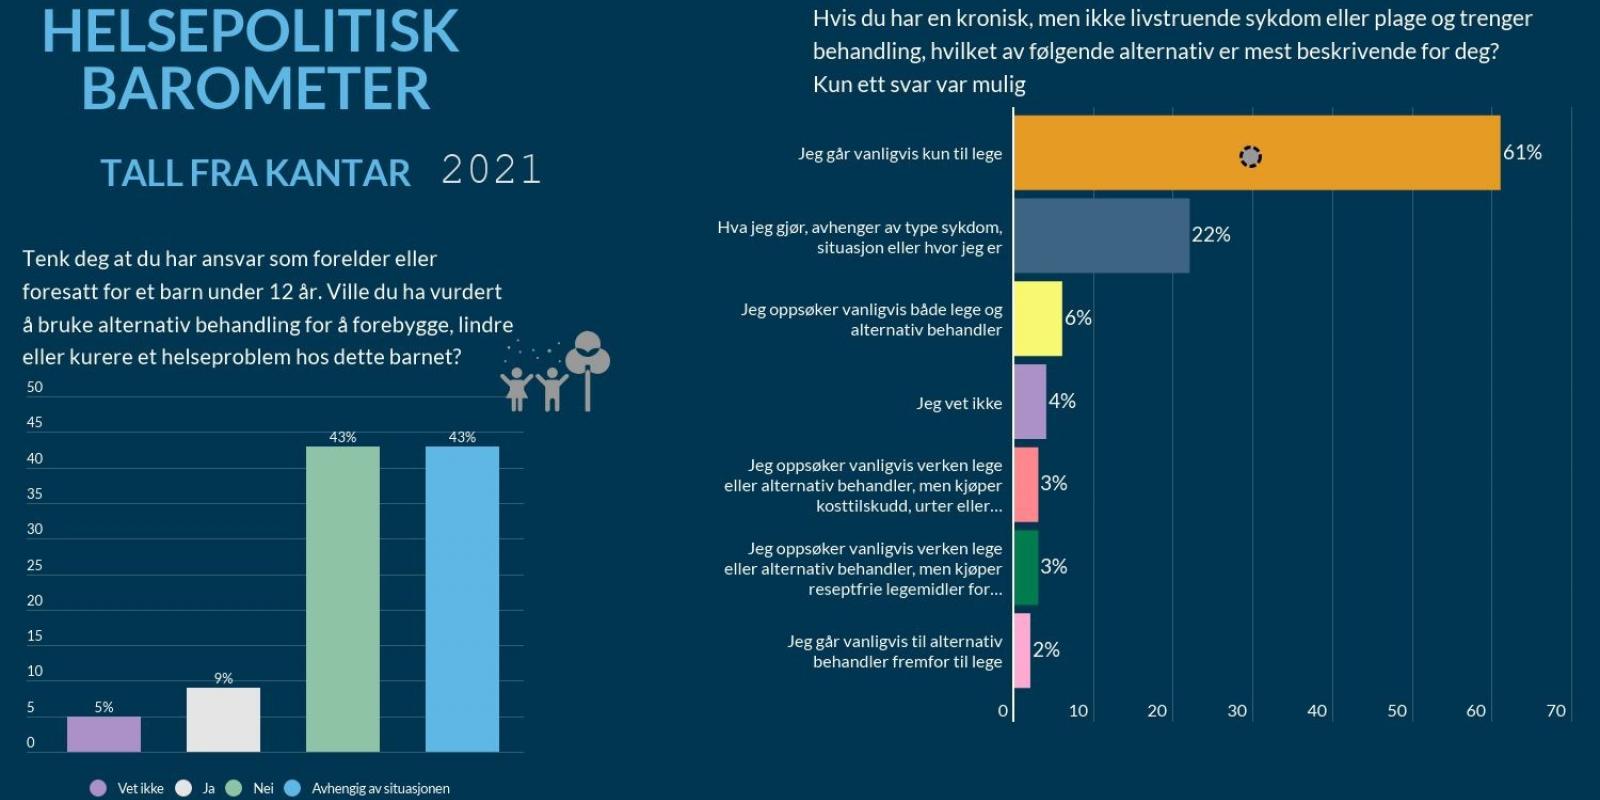 Ilustrasjon av tall fra Helsepolitisk barometer for 2021